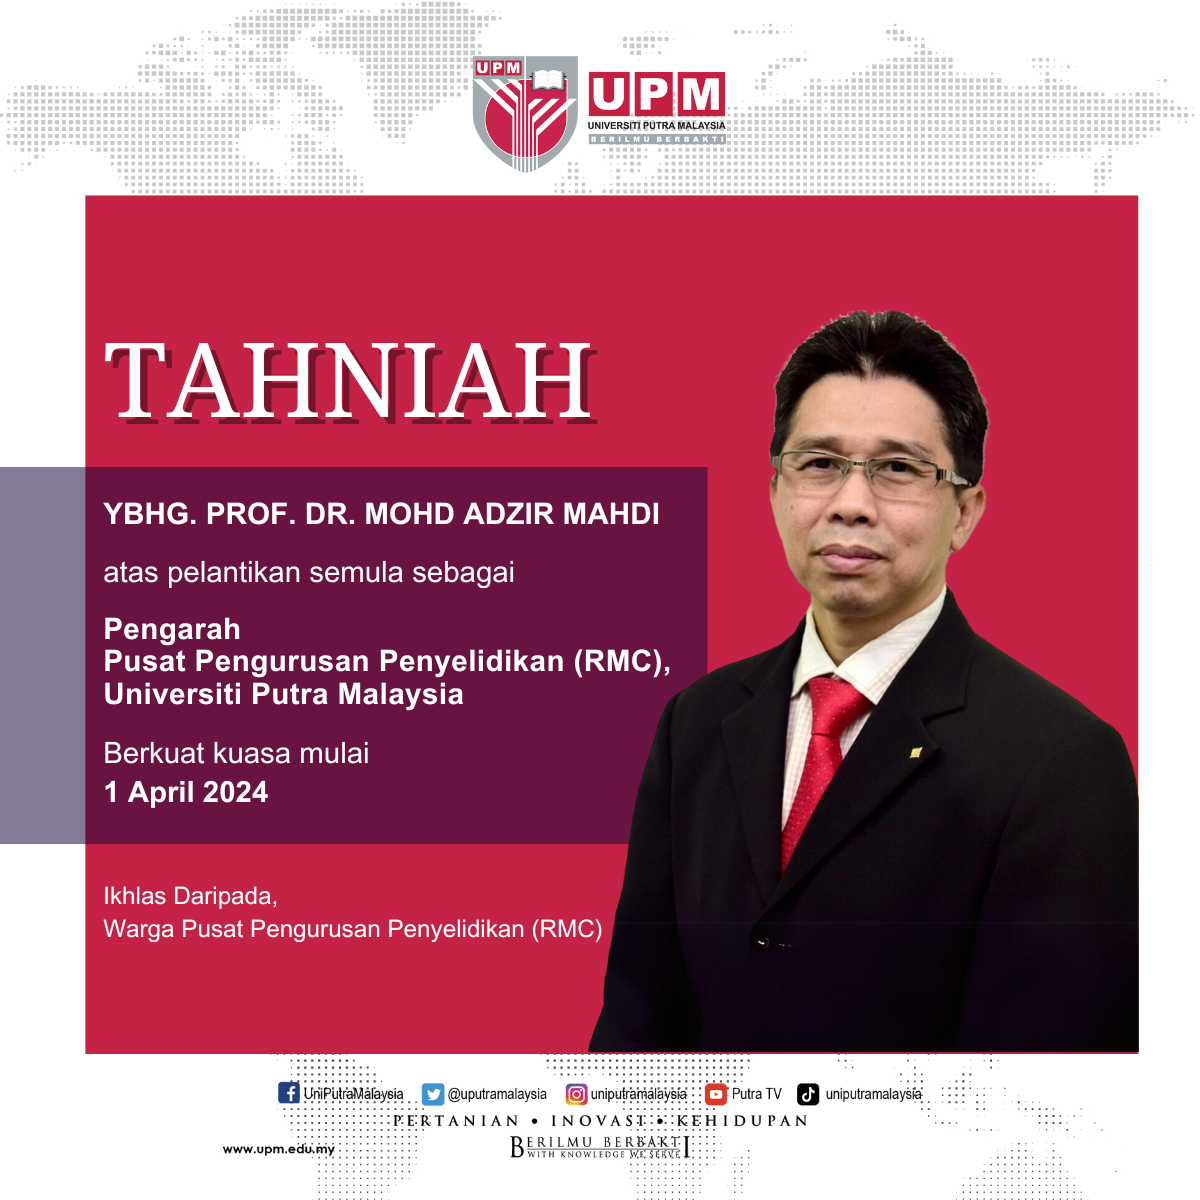 Tahniah YBhg. Prof. Dr. Mohd Adzir Mahdi atas pelantikan semula sebagai Pengarah, Pusat Pengurusan Penyelidikan (RMC), Universiti Putra Malaysia